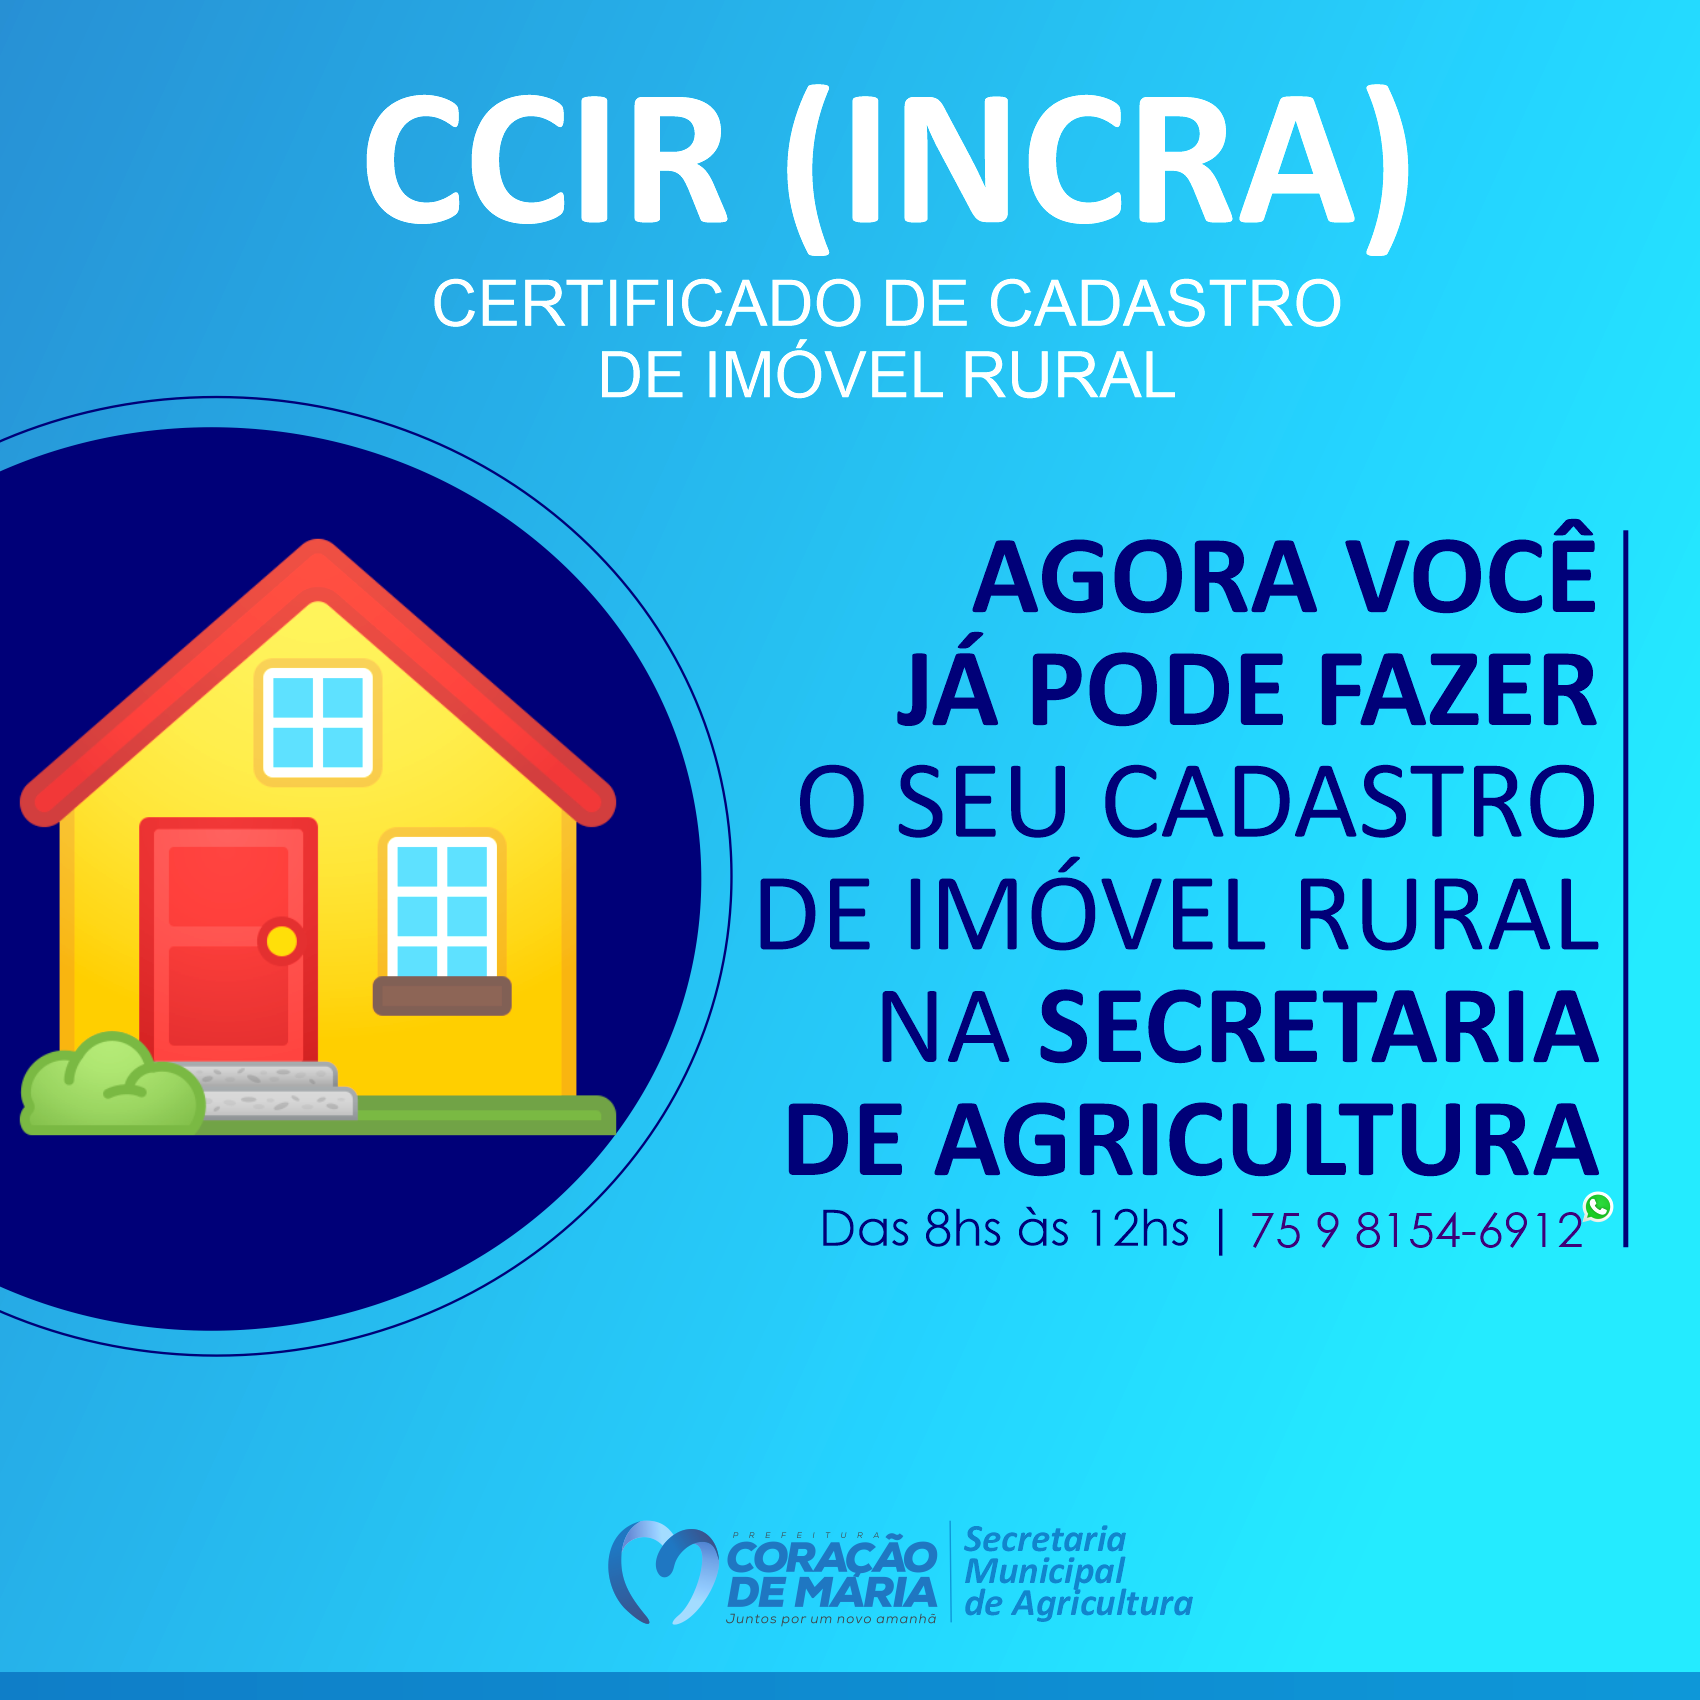 CCIR (INCRA) - Certificado de Cadastro de Imóvel Rural